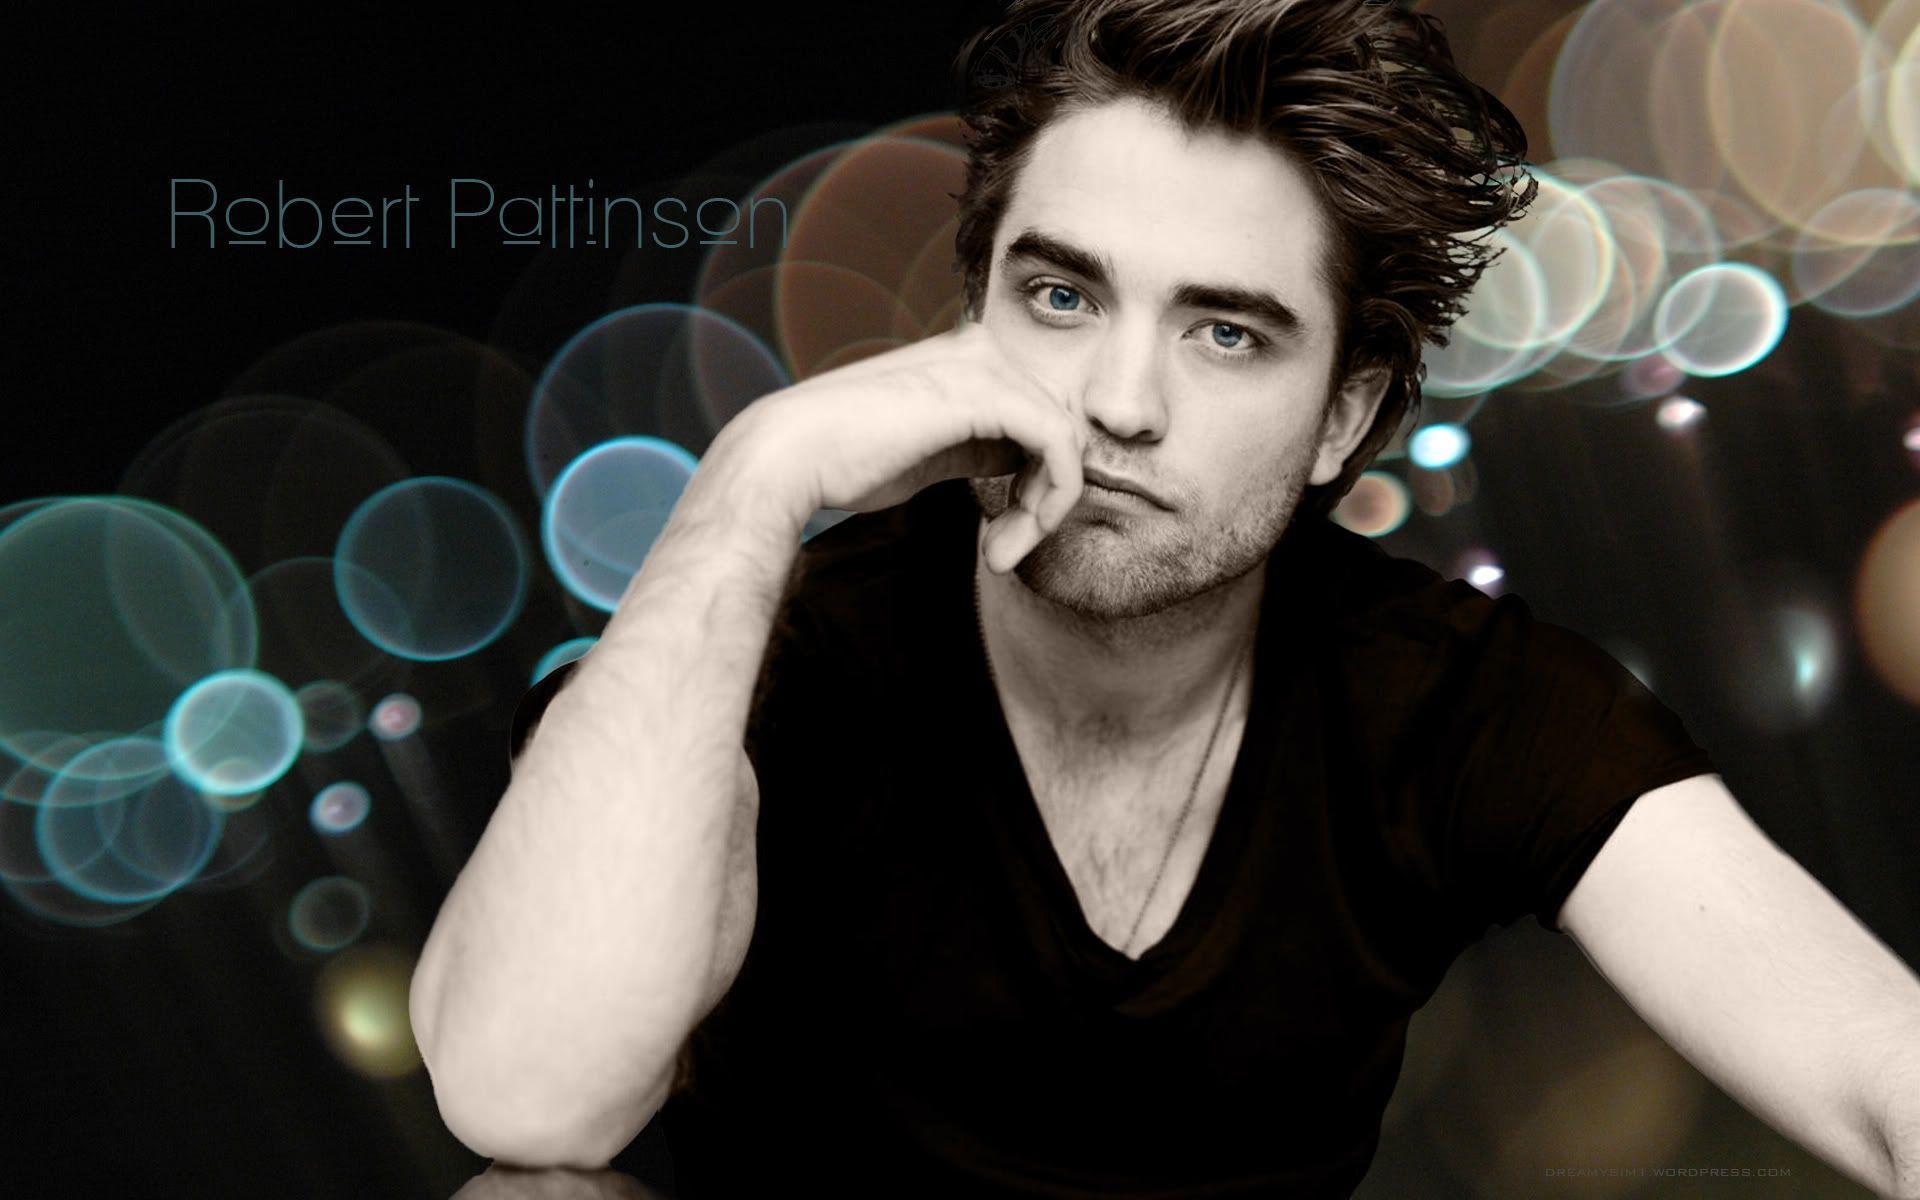 Robert Pattinson Wallpaper. High Quality Wallpaper